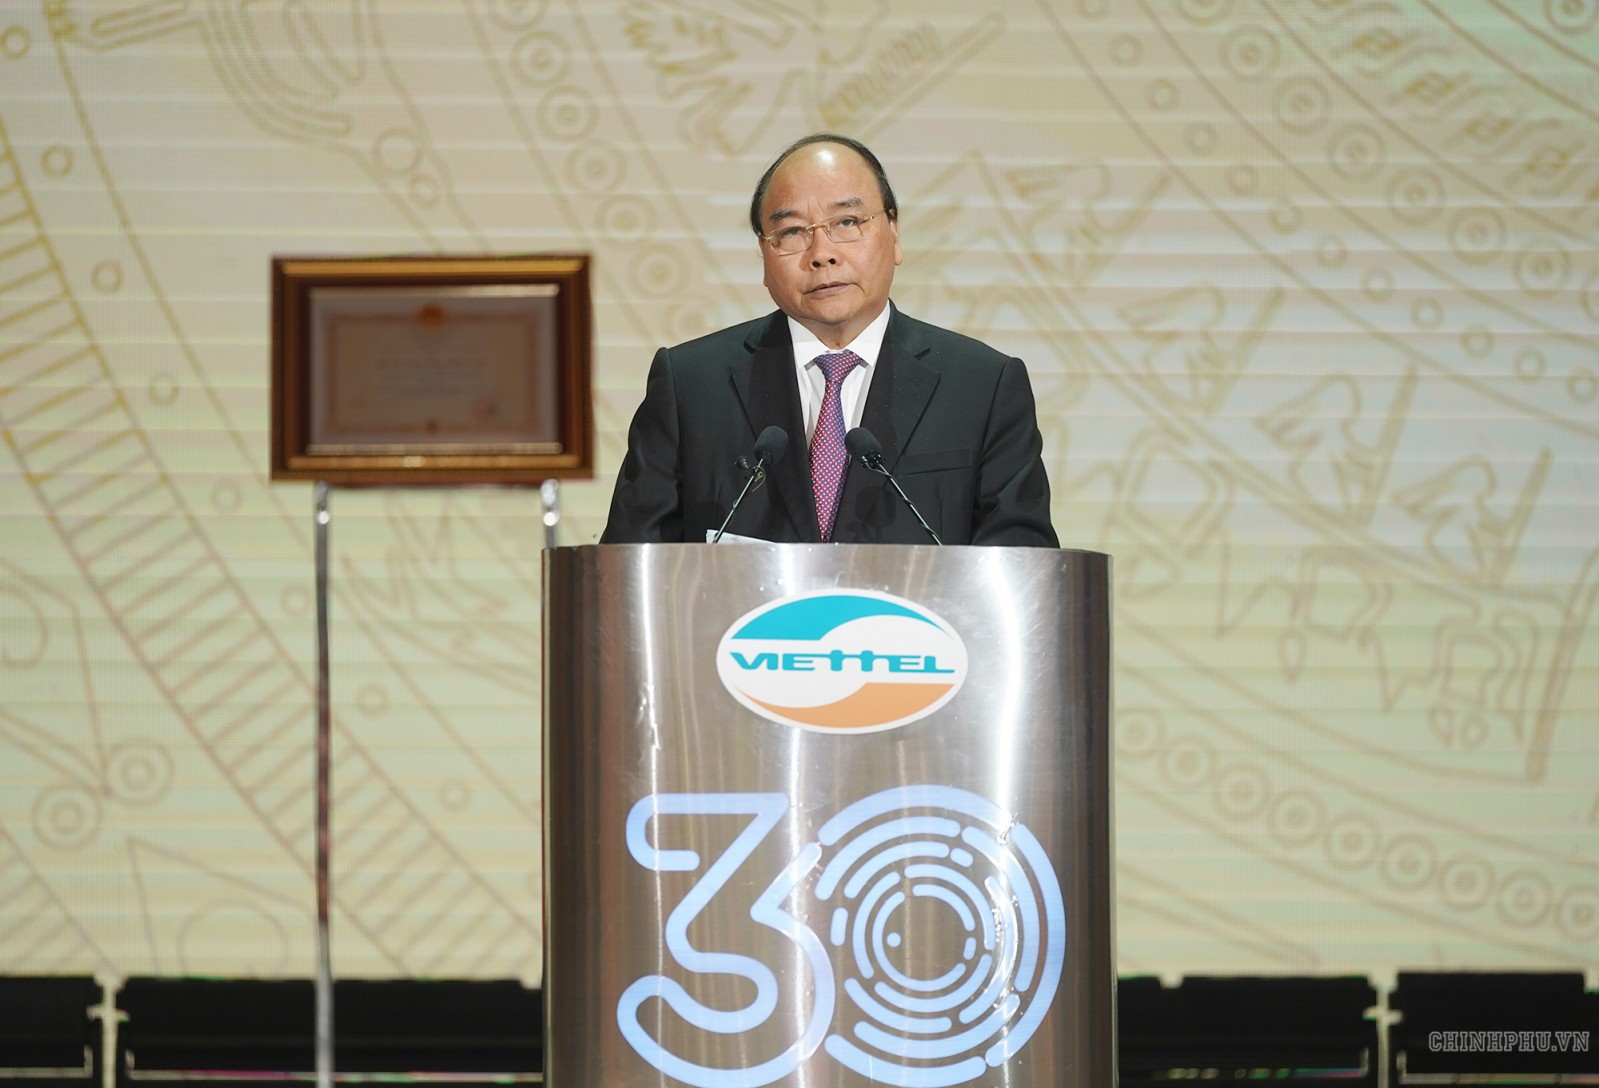 Thủ tướng Nguyễn Xuân Phúc: Đất nước cần nhiều doanh nghiệp như Viettel. Ảnh VGP/Quang Hiếu